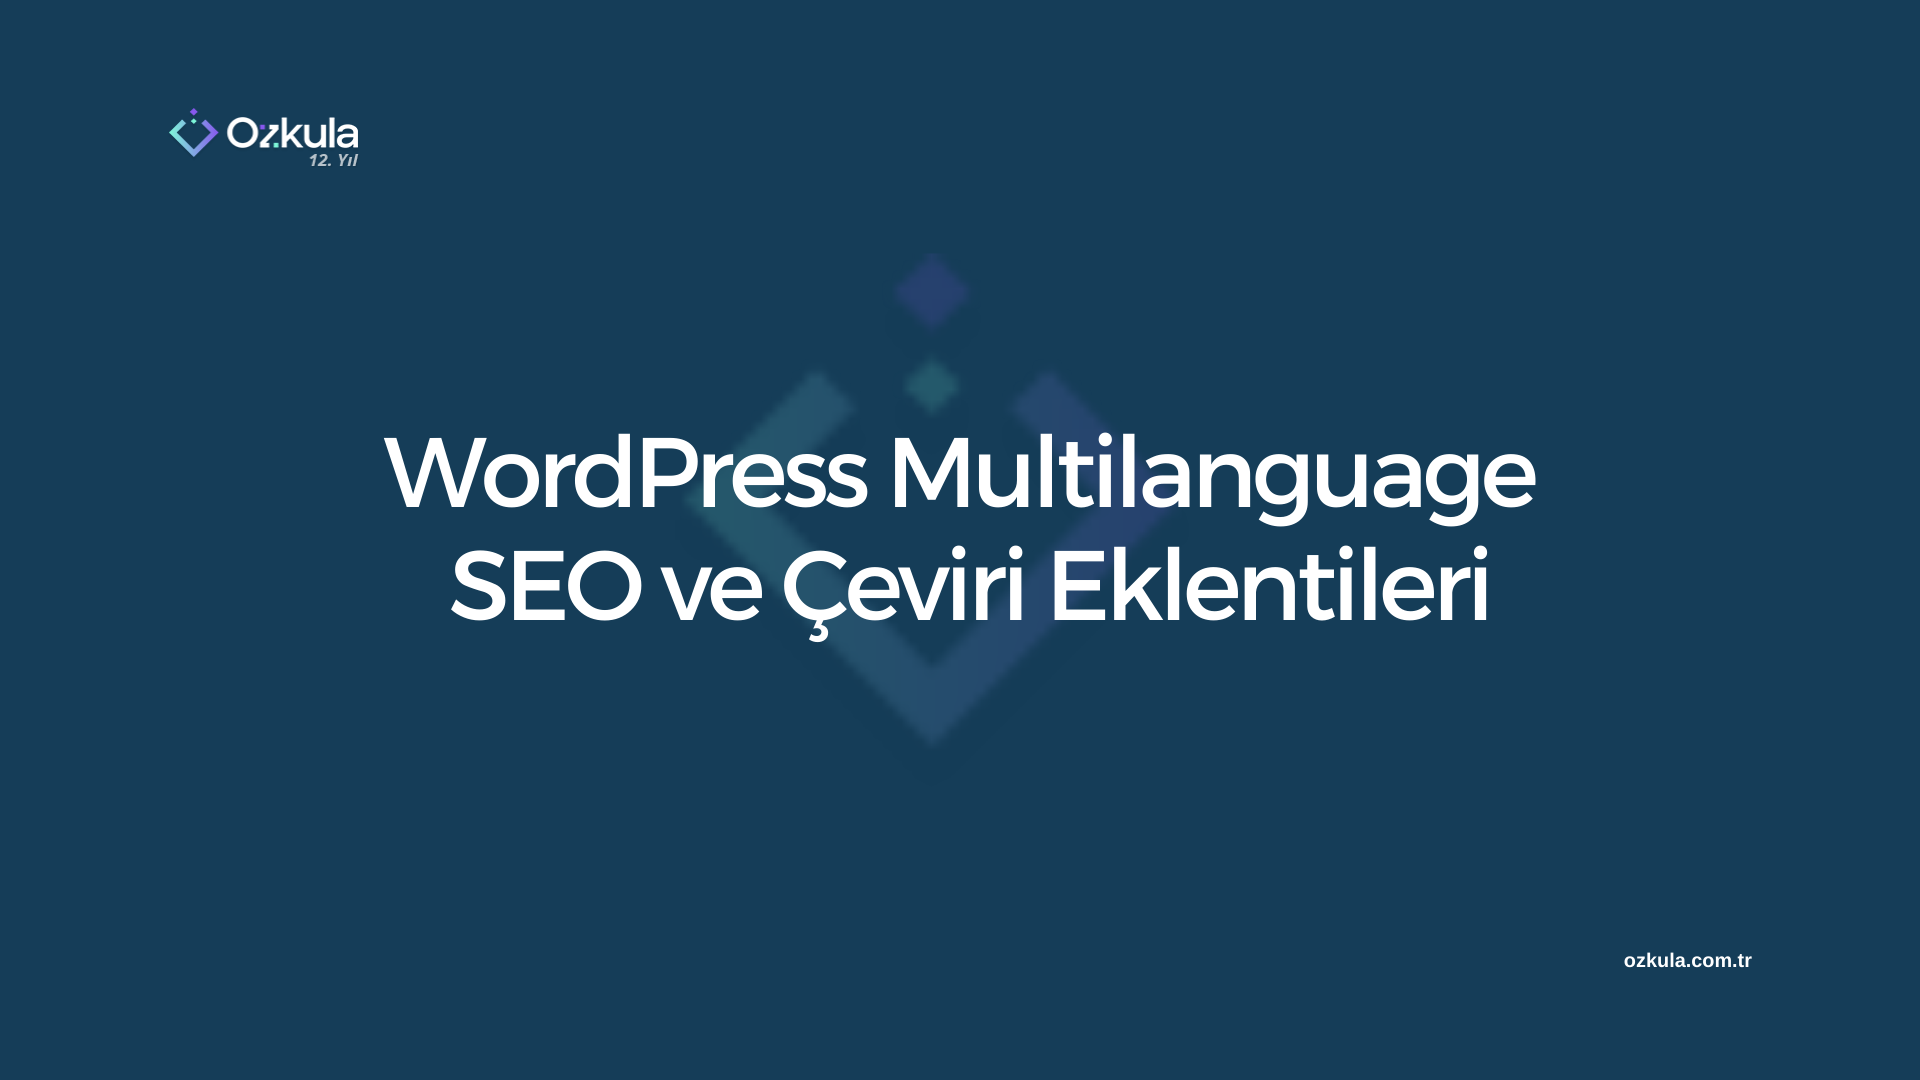 WordPress Multilanguage SEO ve Çeviri Eklentileri